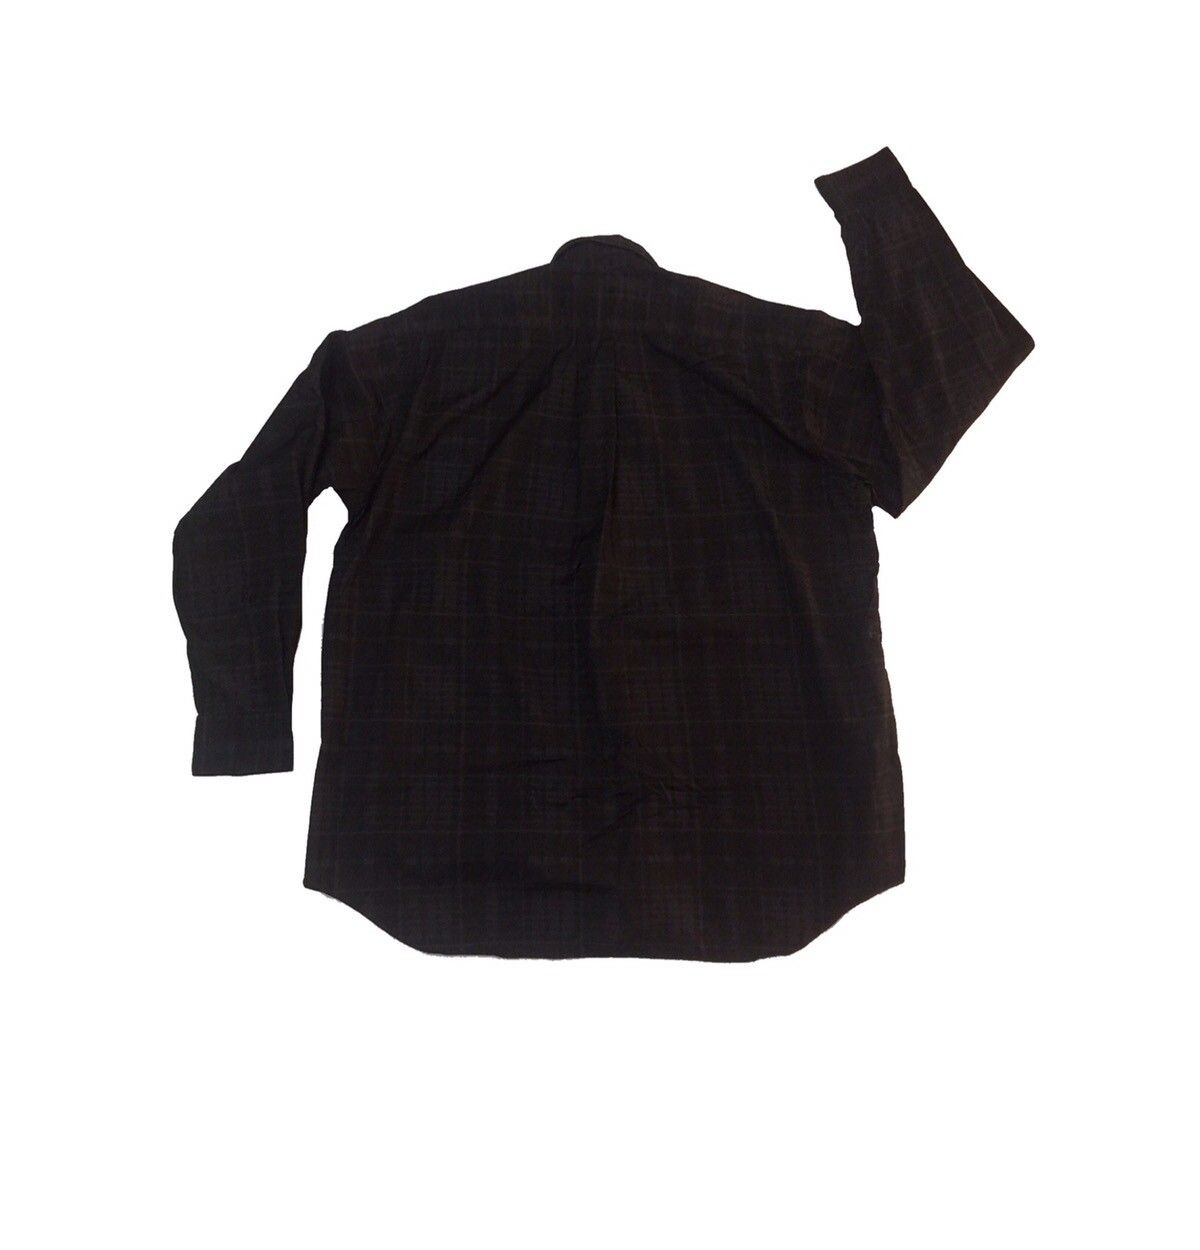 Comme des Garcons GRAILED🔥OG Comme des Garcons 🇯🇵 Edition “Kamakura” B/D Shirt Size US S / EU 44-46 / 1 - 2 Preview